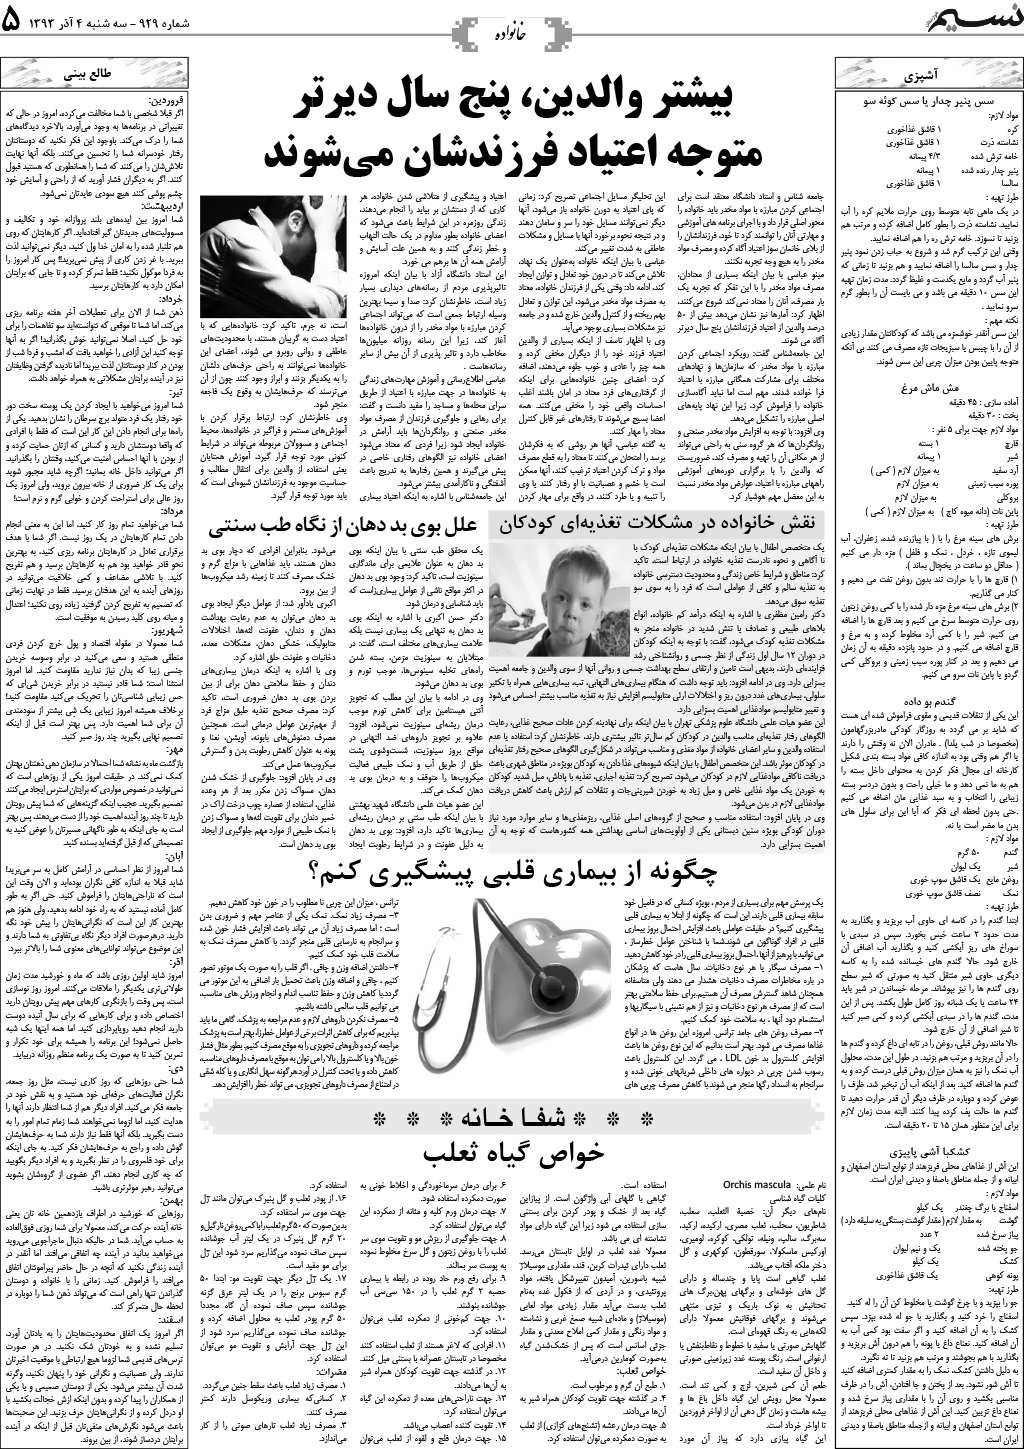 صفحه خانواده روزنامه نسیم شماره 929